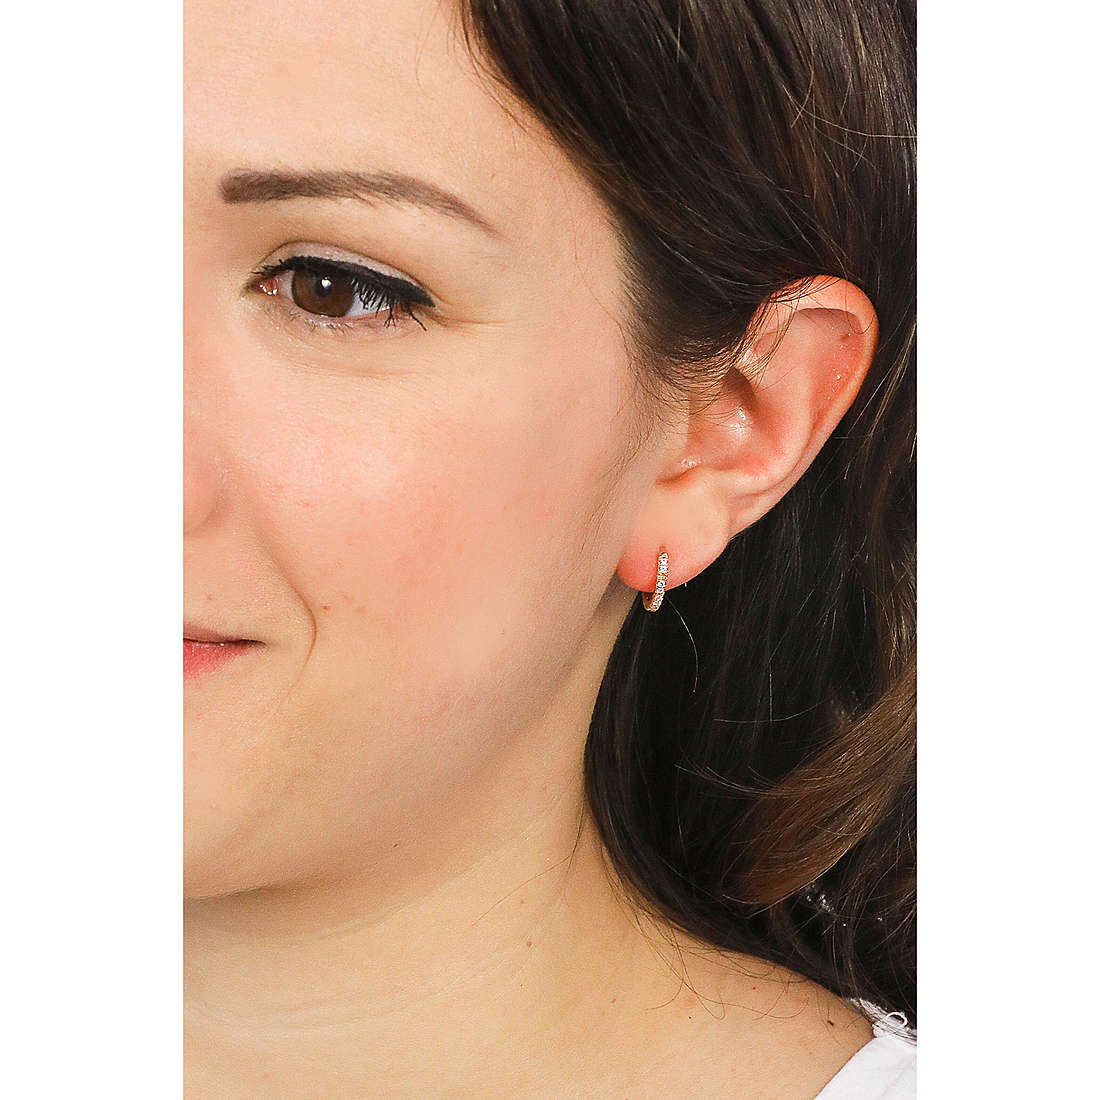 Rebecca earrings woman SWNORR30 wearing